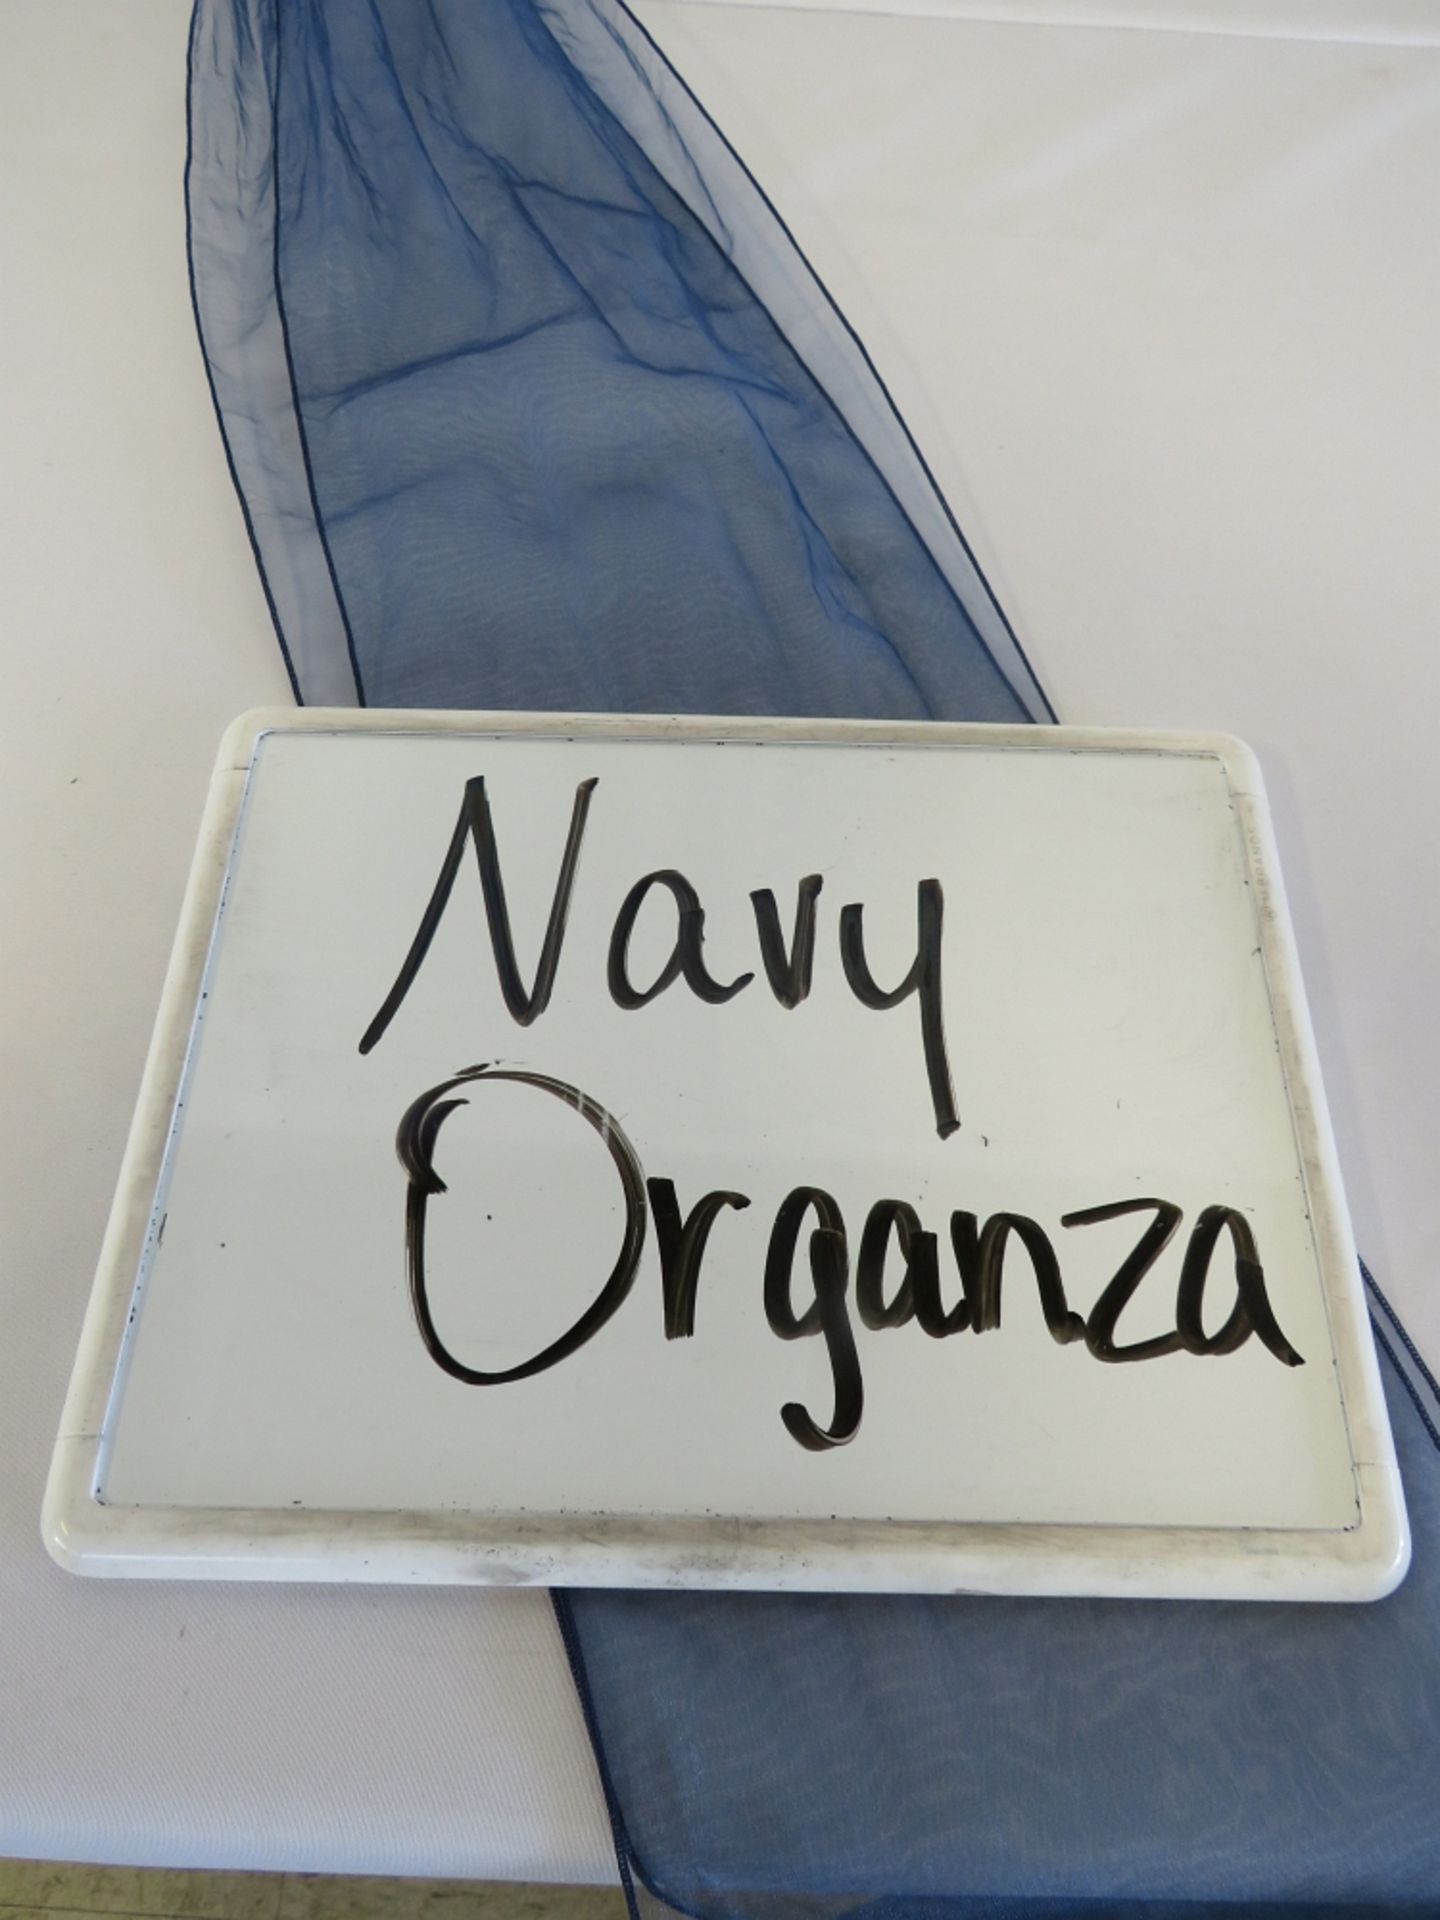 Chair Sash, Organza, Navy Blue